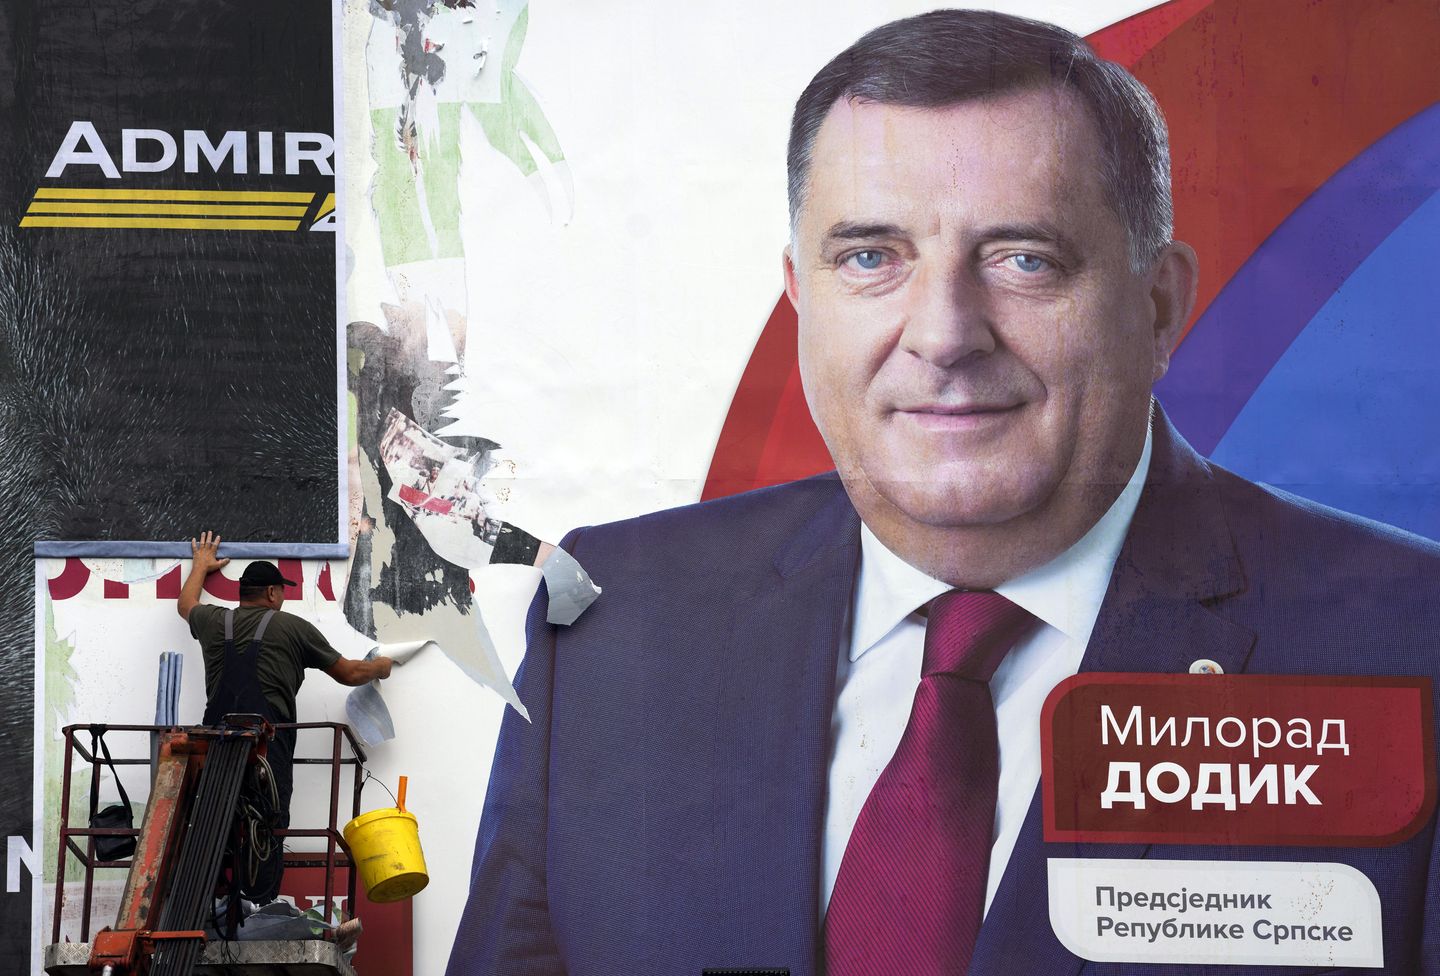 Antony Blinken, Bosnalı Sırp lider Milorad Dodik'i Vladimir Putin'e benzetiyor